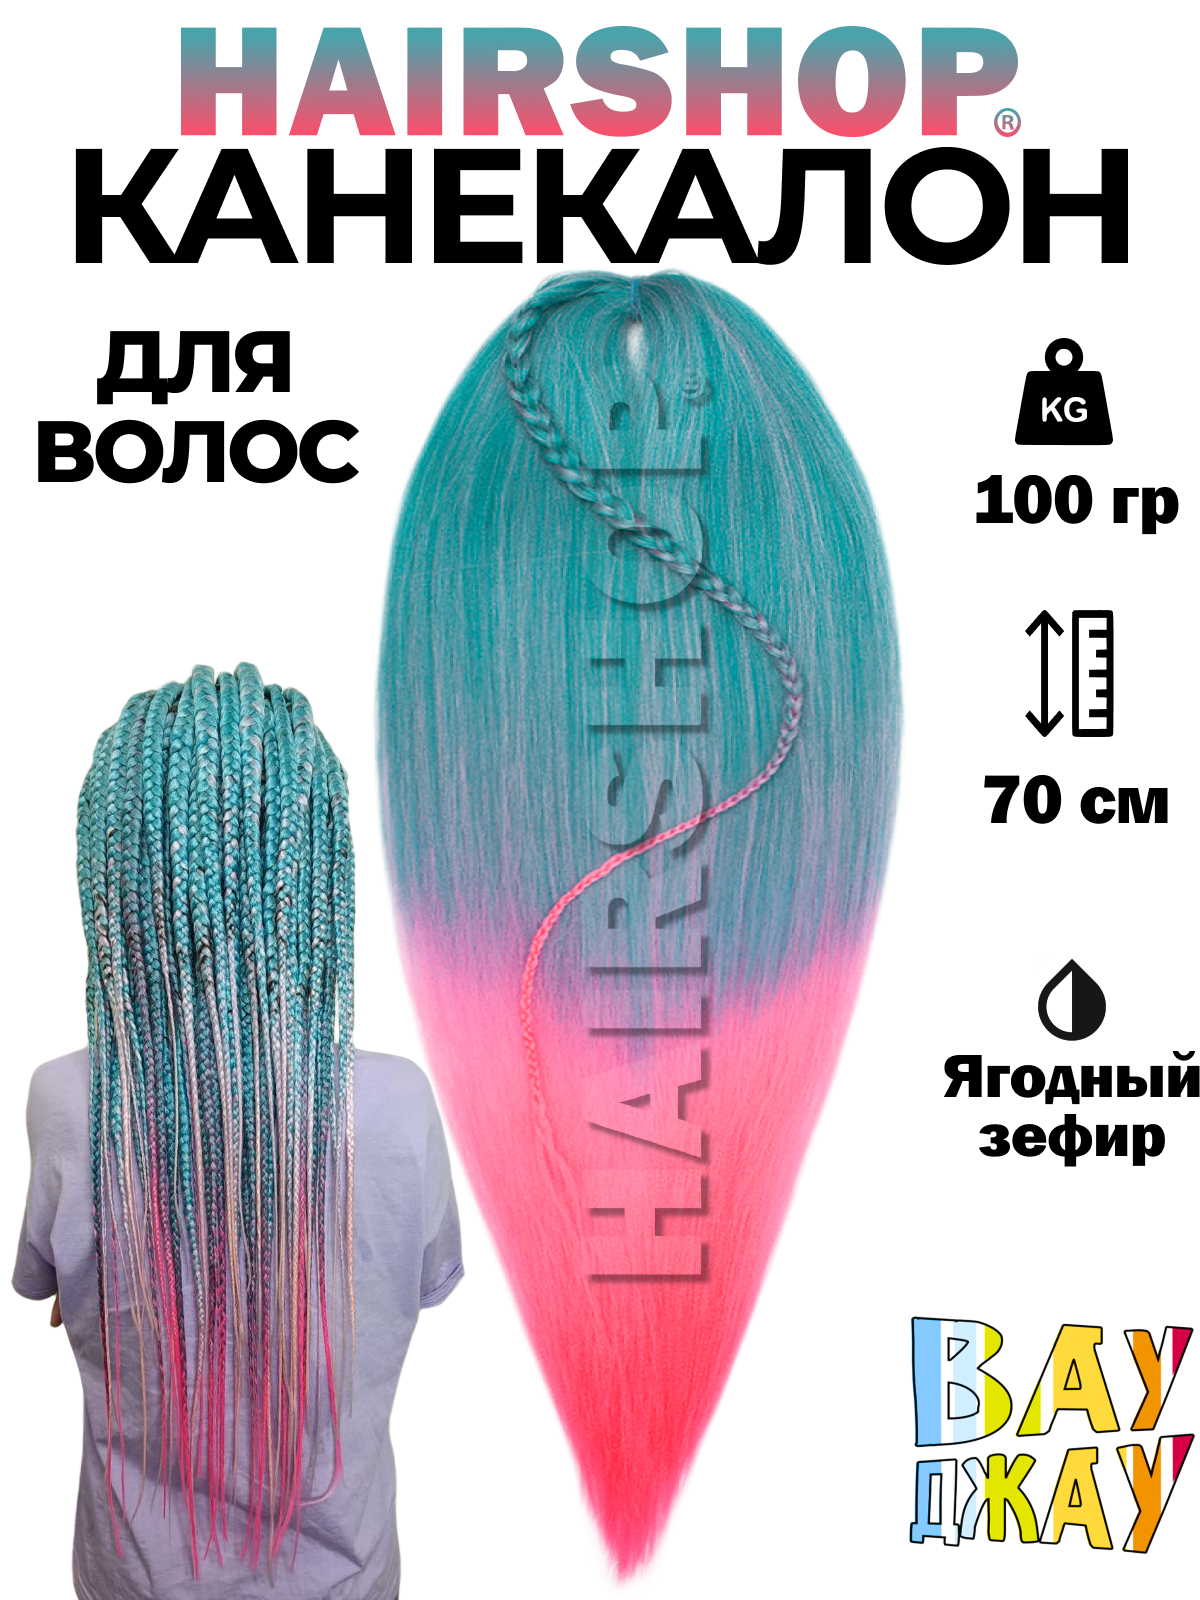 Канекалон Hairshop Вау Джау Ягодный зефир 1,4м 100г манекен для причесок курс по обучению плетению кос 10 уроков линком мп 1